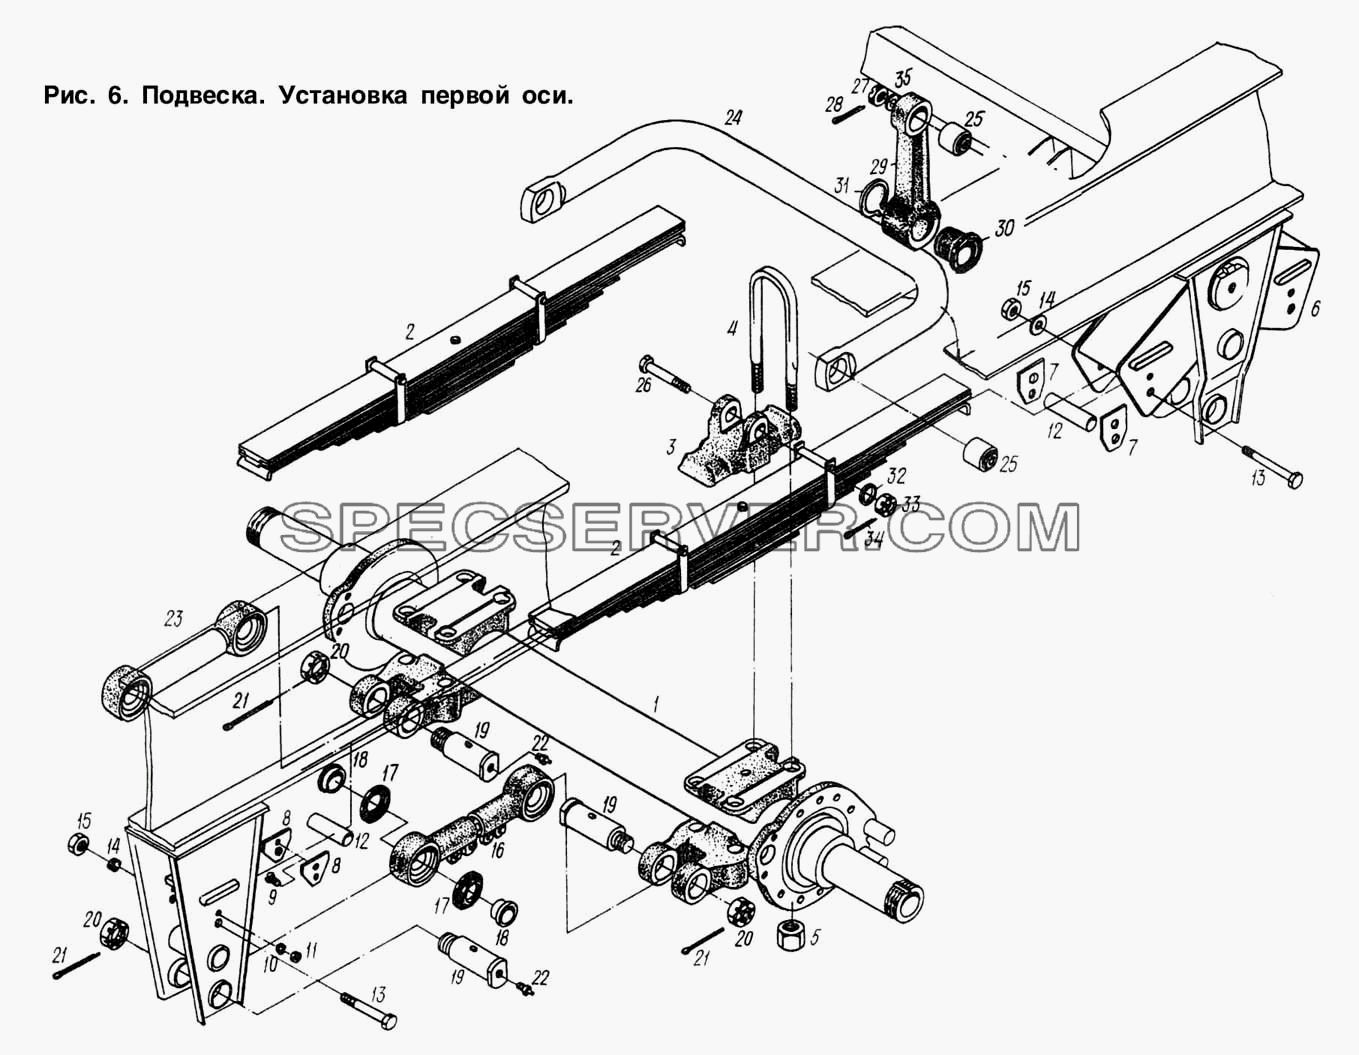 Подвеска. Установка первой оси для МАЗ-93892 (список запасных частей)